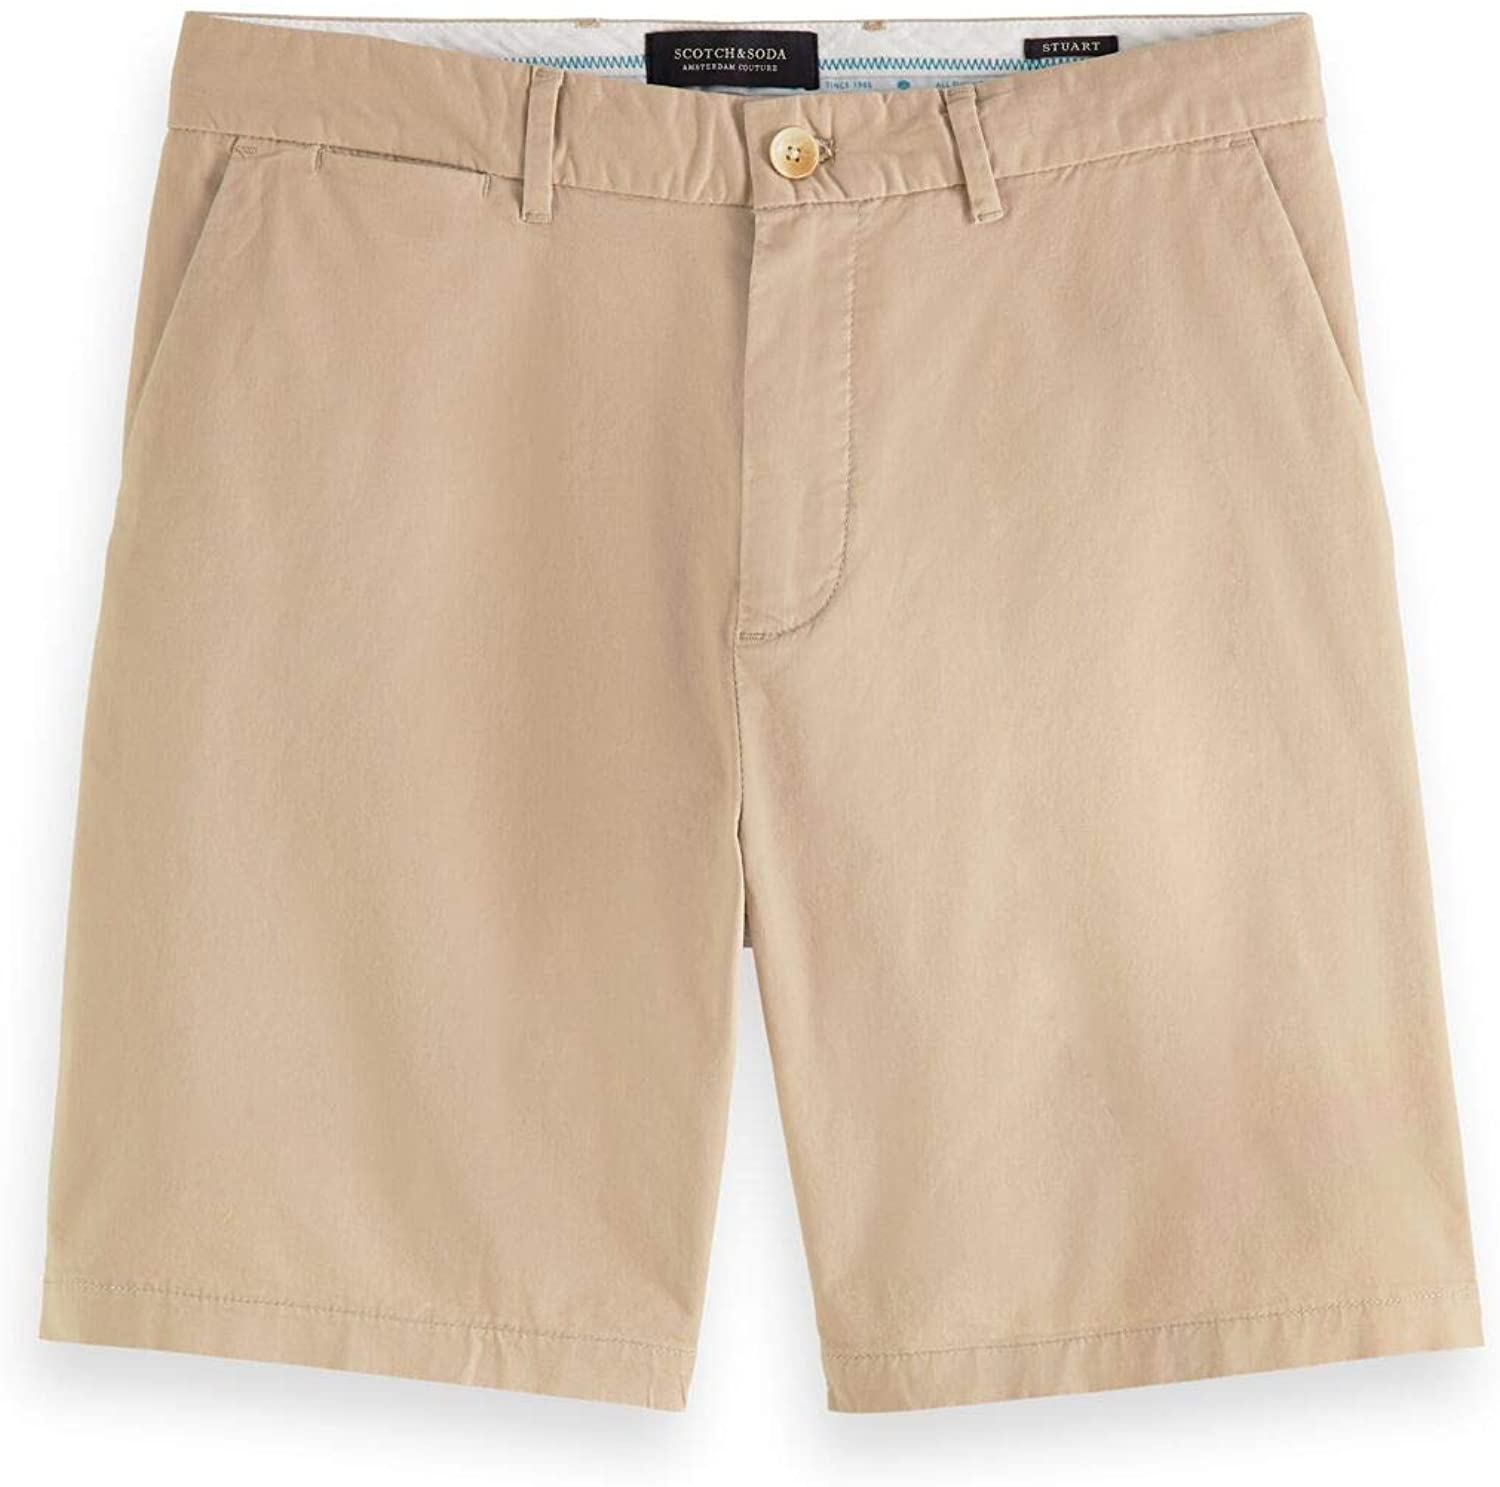 Scotch & Soda Herren Stuart – Chino Regular Slim Fit-Pima Cotton Shorts